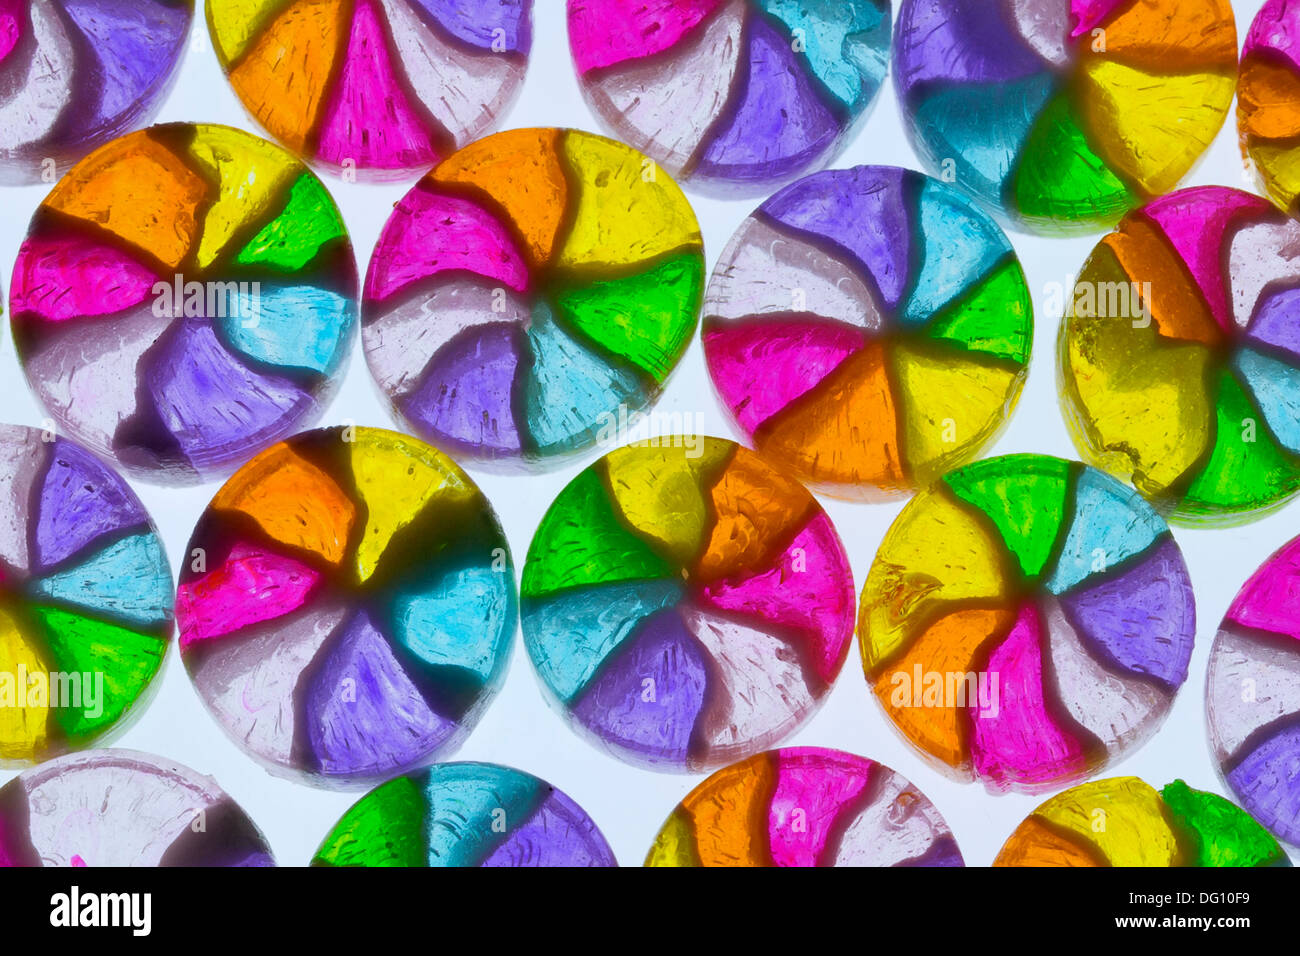 Japanische Süßigkeiten Süßigkeiten auf einem Leuchttisch mit einem Makroobjektiv fotografiert. Stockfoto